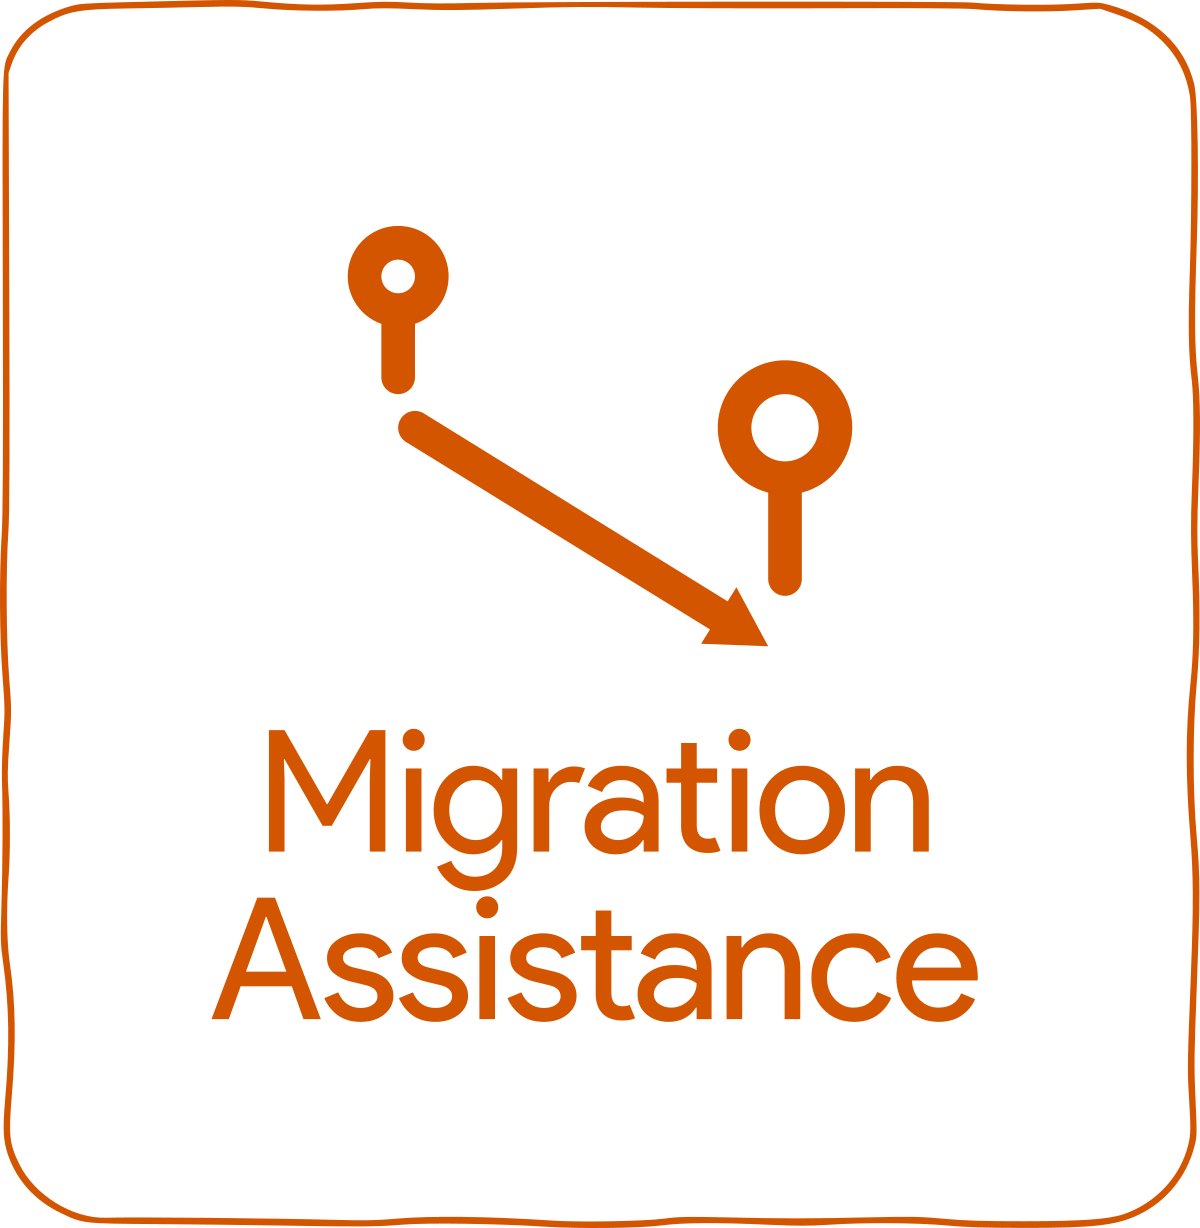 Migration Assistance